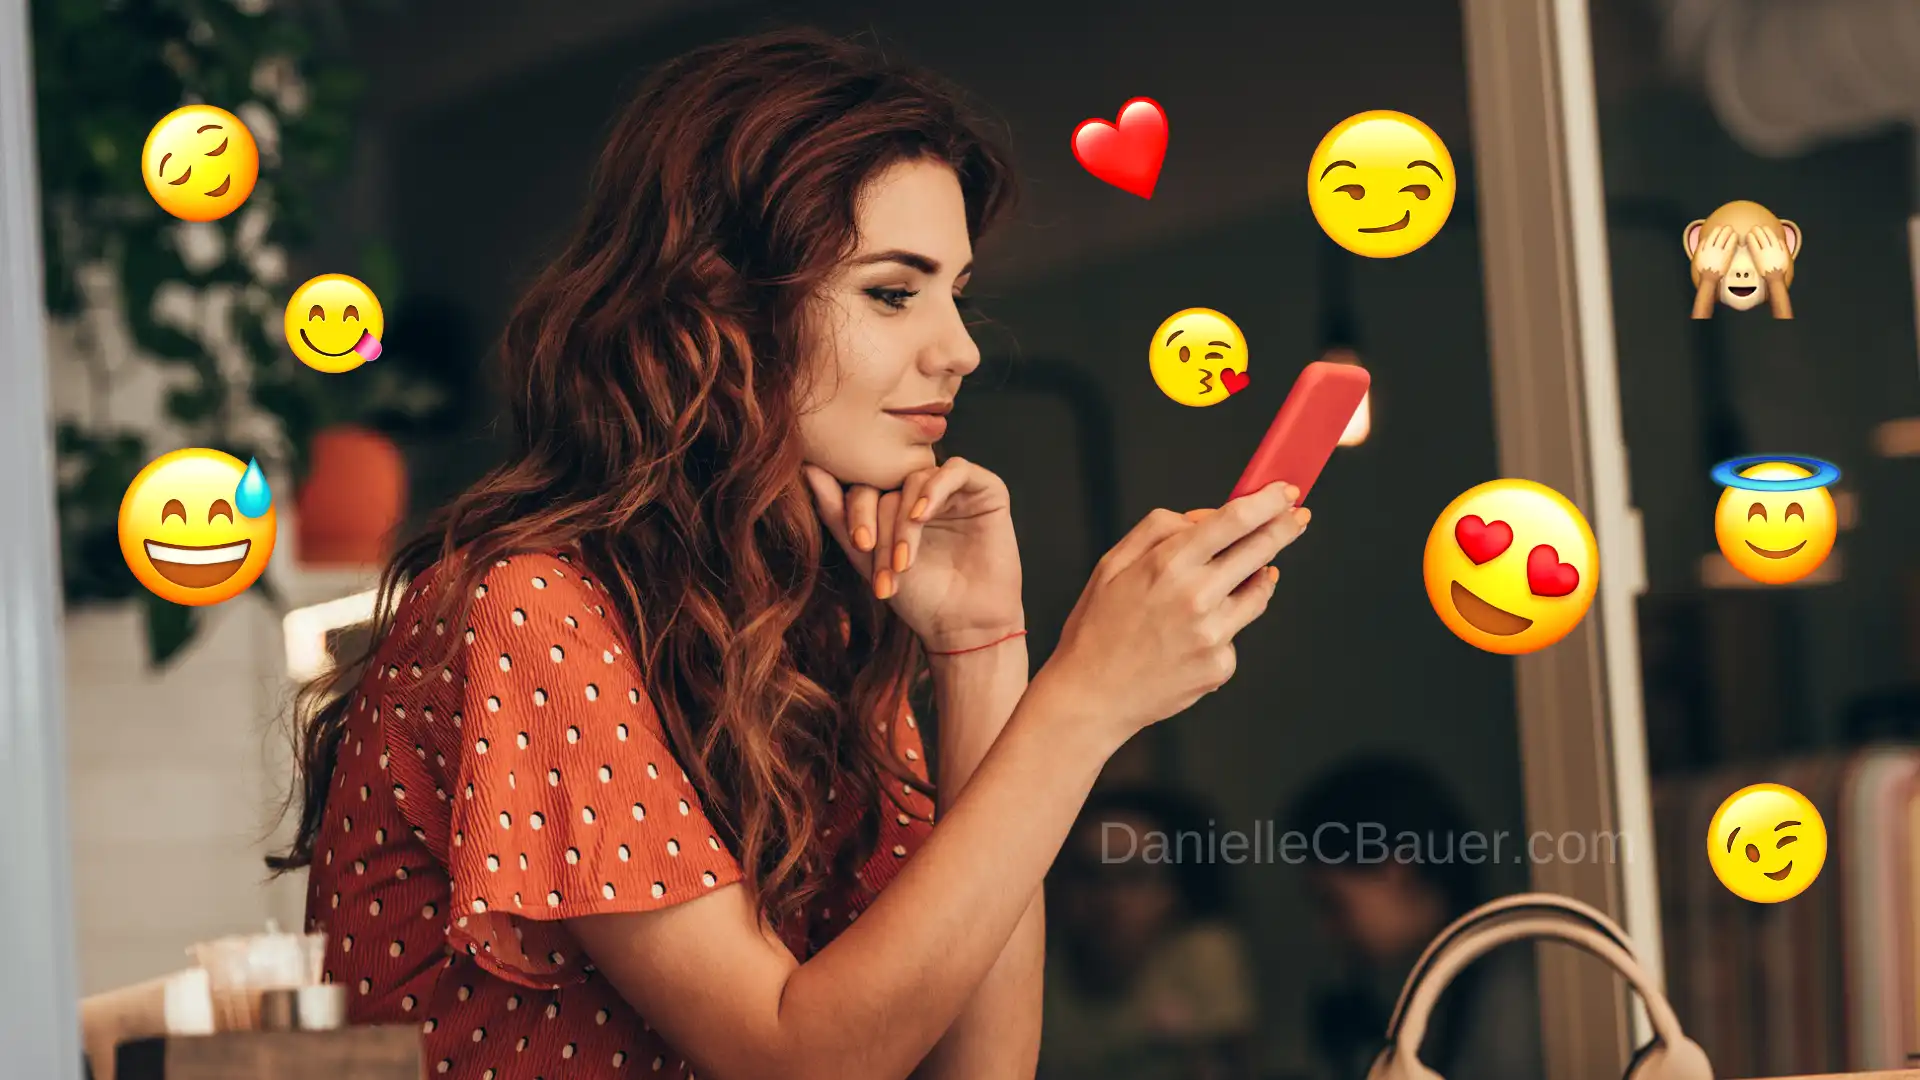 Significado dos Emojis no Relacionamento